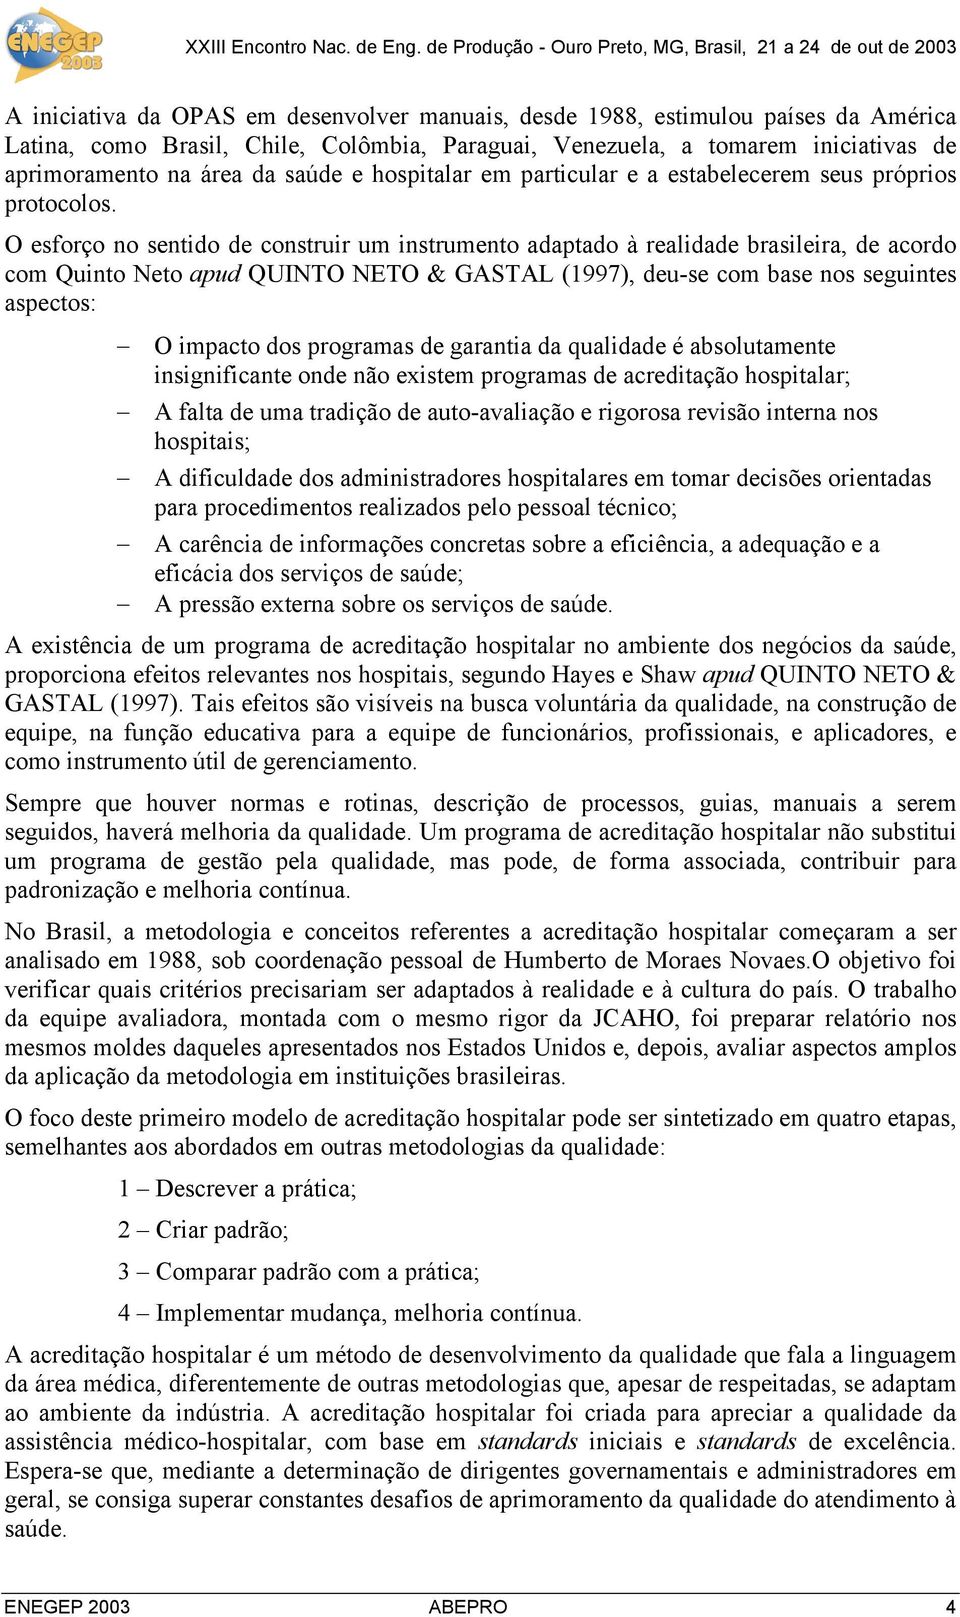 O esforço no sentido de construir um instrumento adaptado à realidade brasileira, de acordo com Quinto Neto apud QUINTO NETO & GASTAL (1997), deu-se com base nos seguintes aspectos: O impacto dos